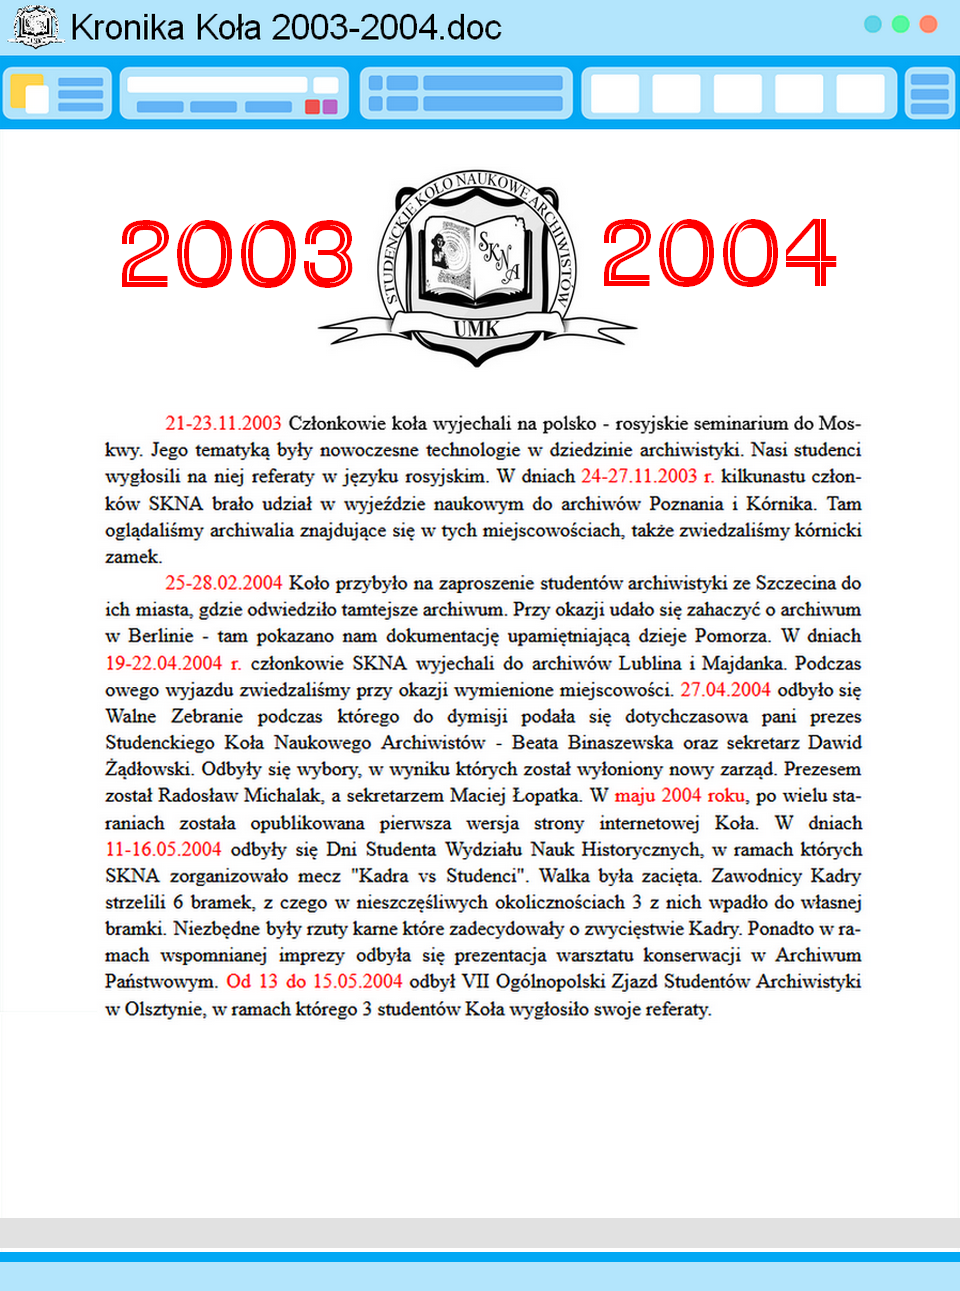 kronika2003-4.png